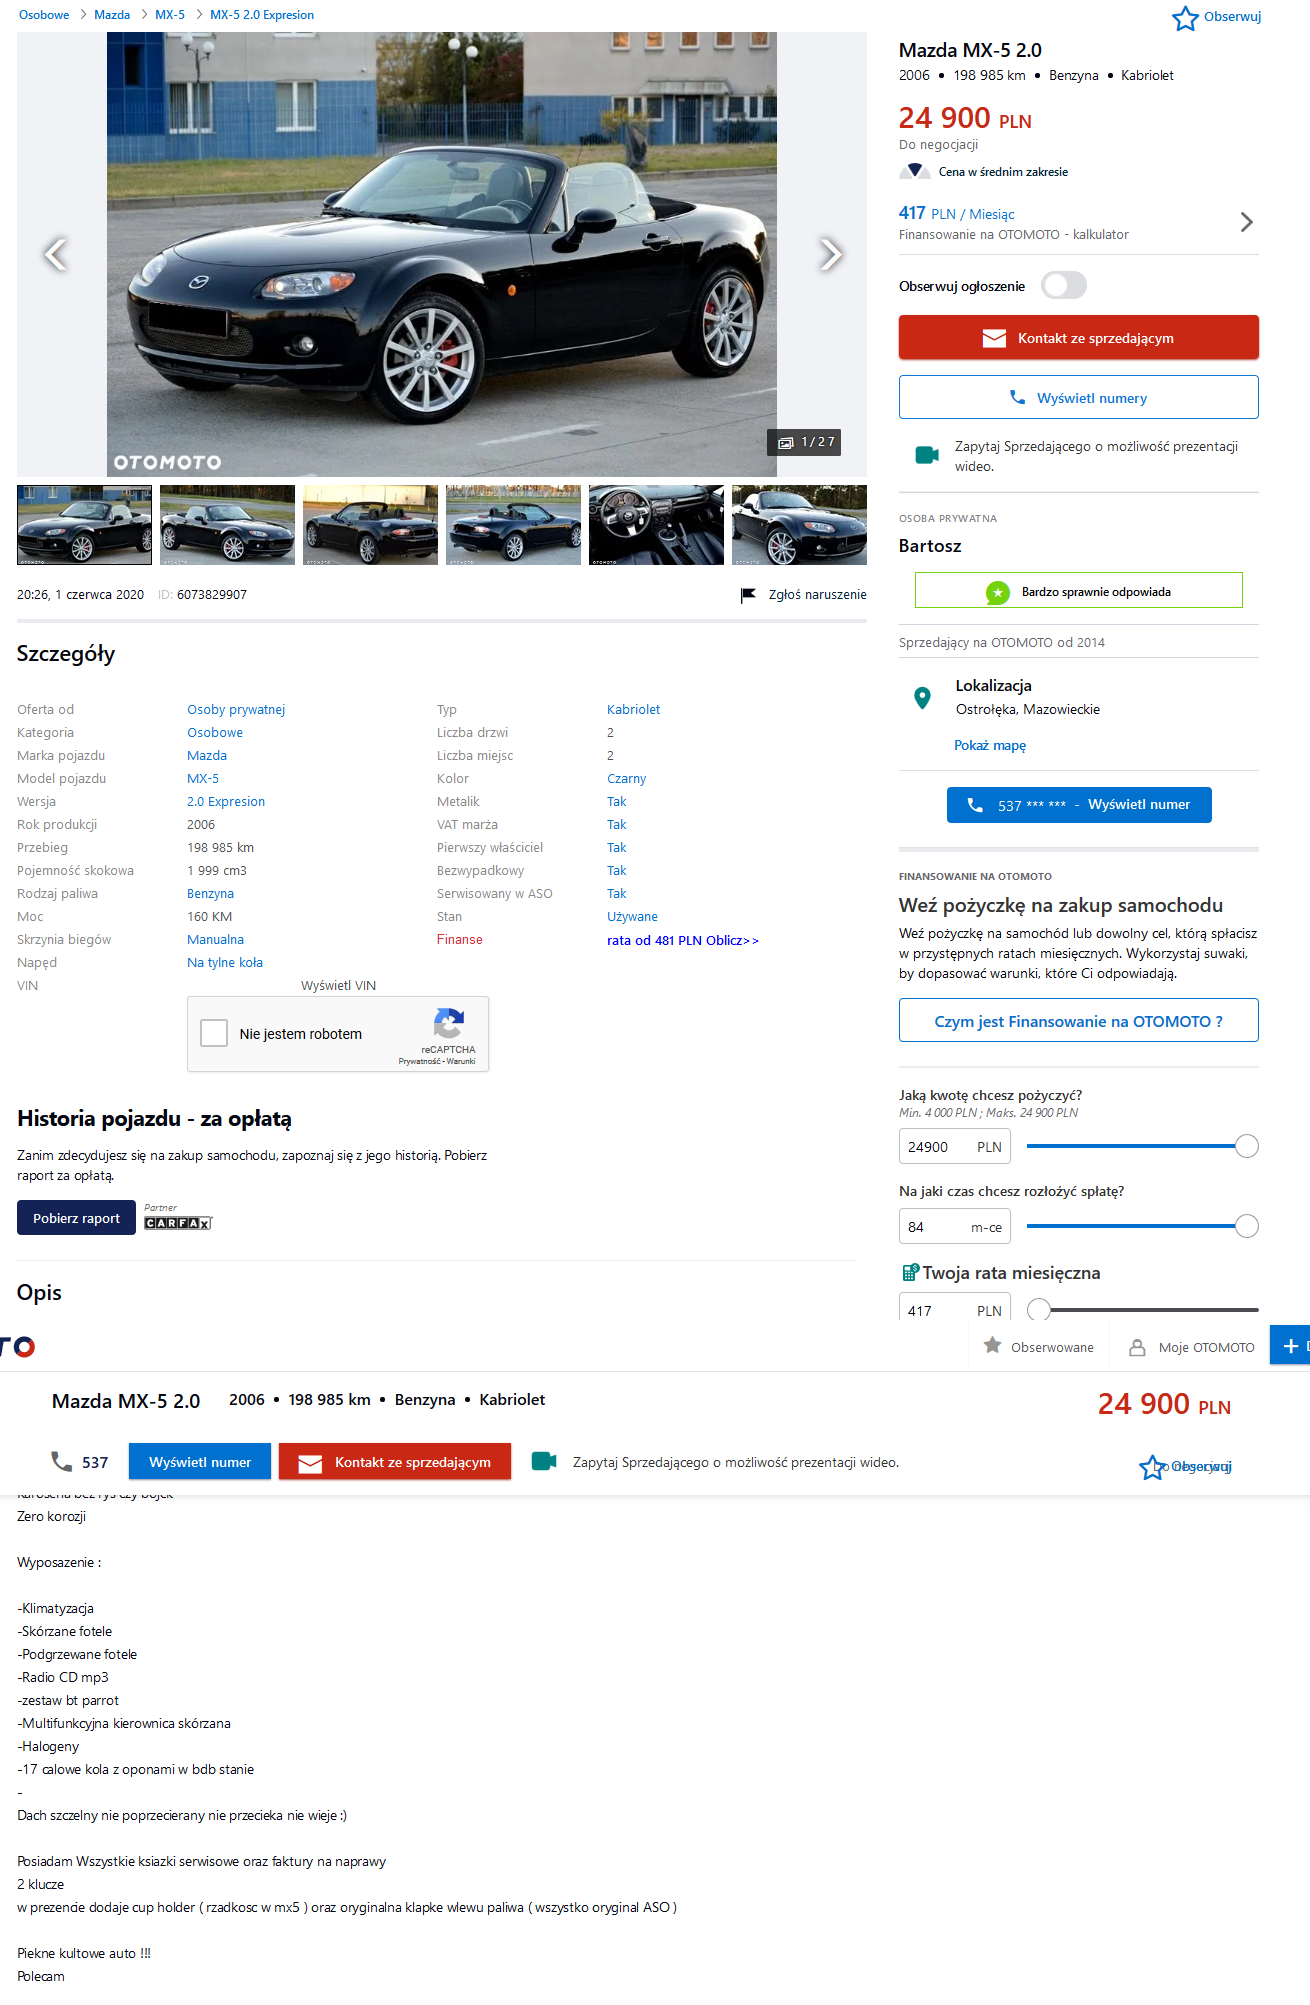 Screenshot_2020-06-18 Używane Mazda MX-5 - 24 900 PLN, 198 985 km, 2006 - otomoto pl(1).png